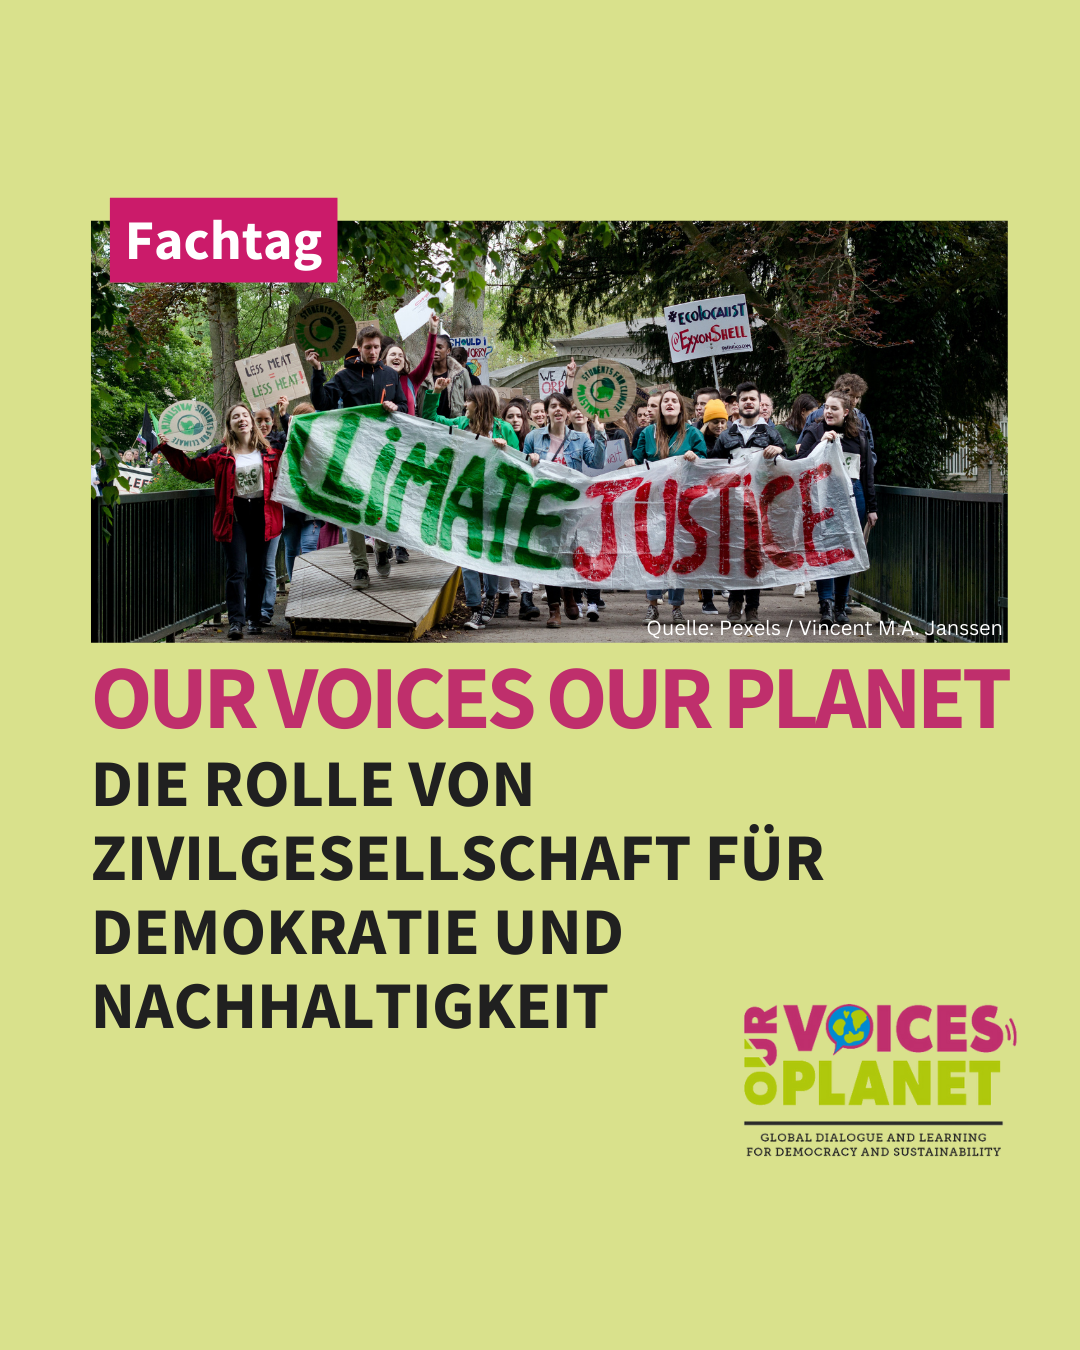 Fachtag: Our Voices Our Planet – Die Rolle von Zivilgesellschaft für Demokratie und Nachhaltigkeit